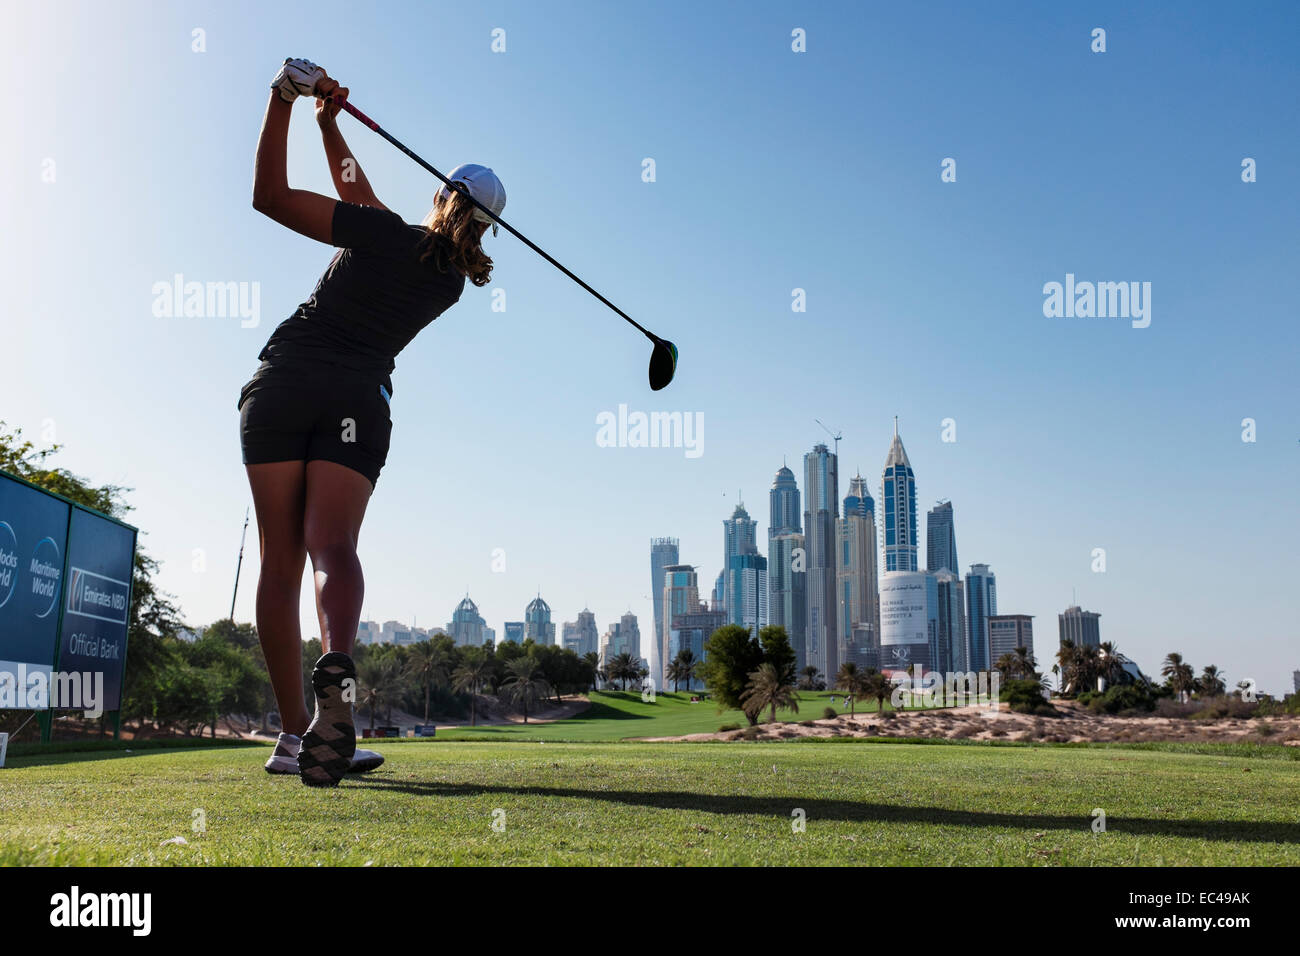 Dubaï, Émirats arabes unis. 9 Décembre, 2014. Cheyenne Woods (nièce de Tiger Woods) des USA de tees Tee 8e au Emirates Golf Club durant la compétition Pro-Am avant l'Omega Dubai Ladies Masters Golf Tournament à Dubaï Émirats Arabes Unis Crédit : Iain Masterton/Alamy Live News Banque D'Images